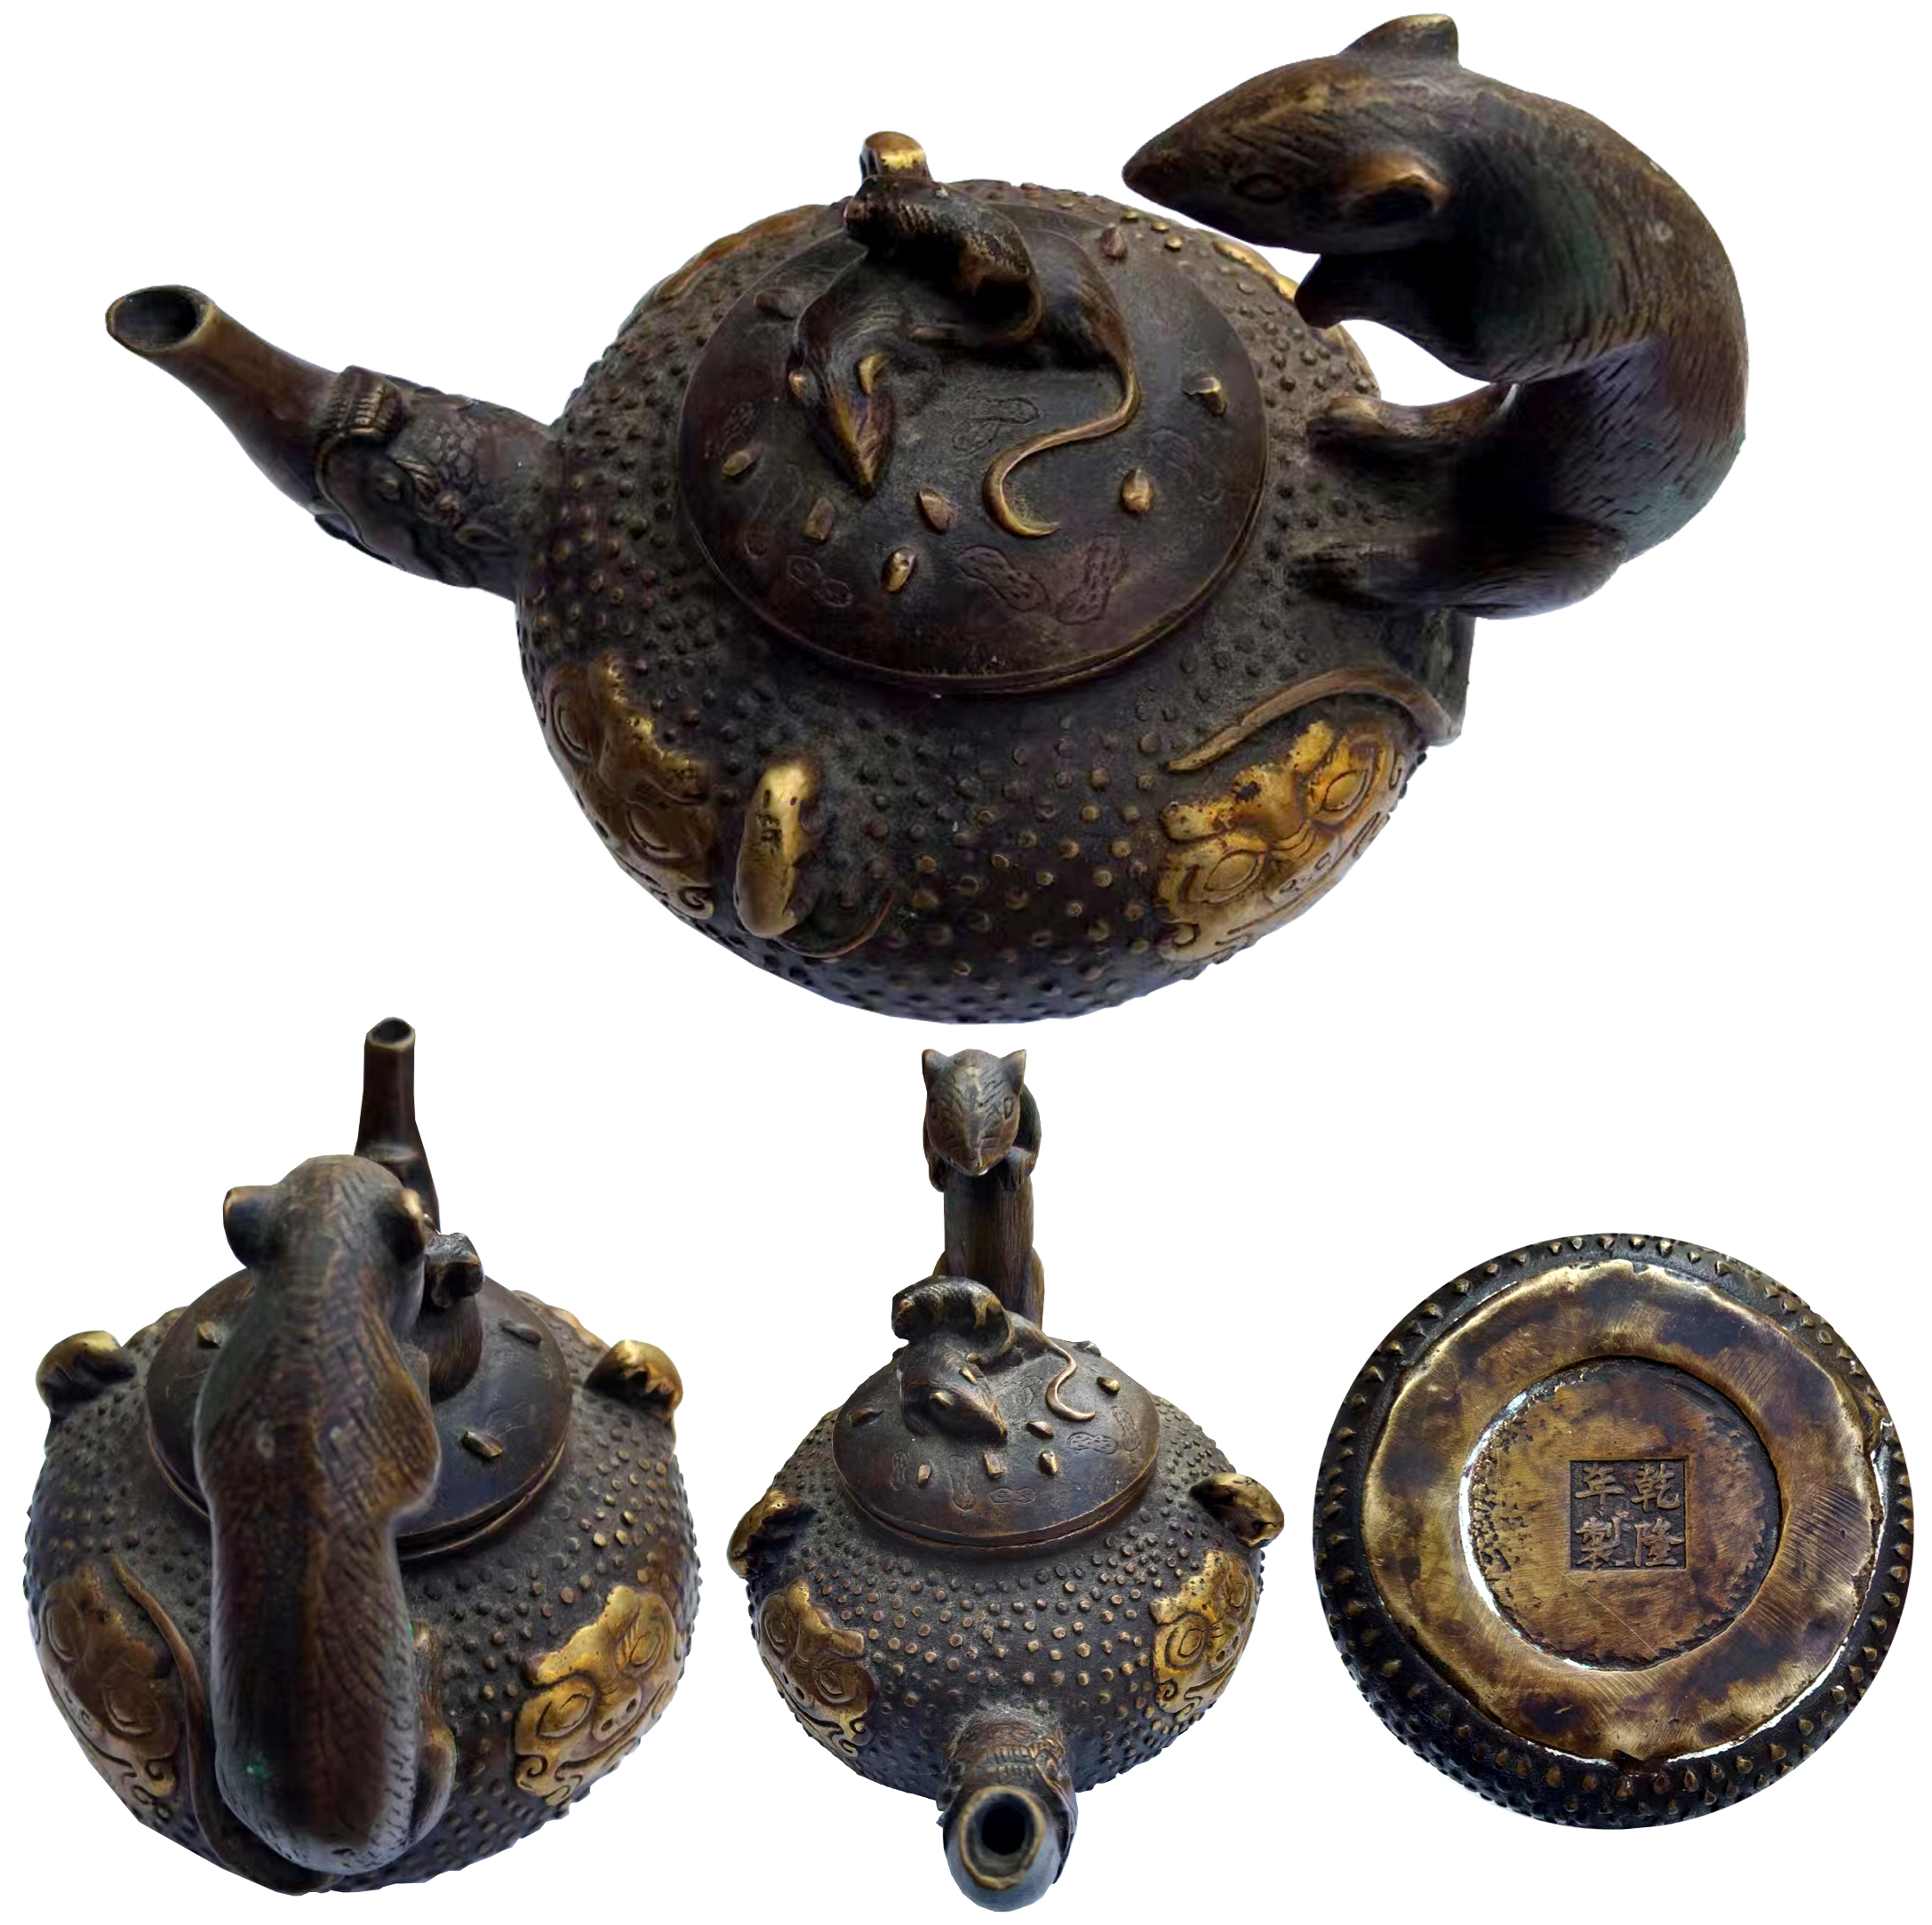 乾隆年制铜鎏金鼠柄纹执壶